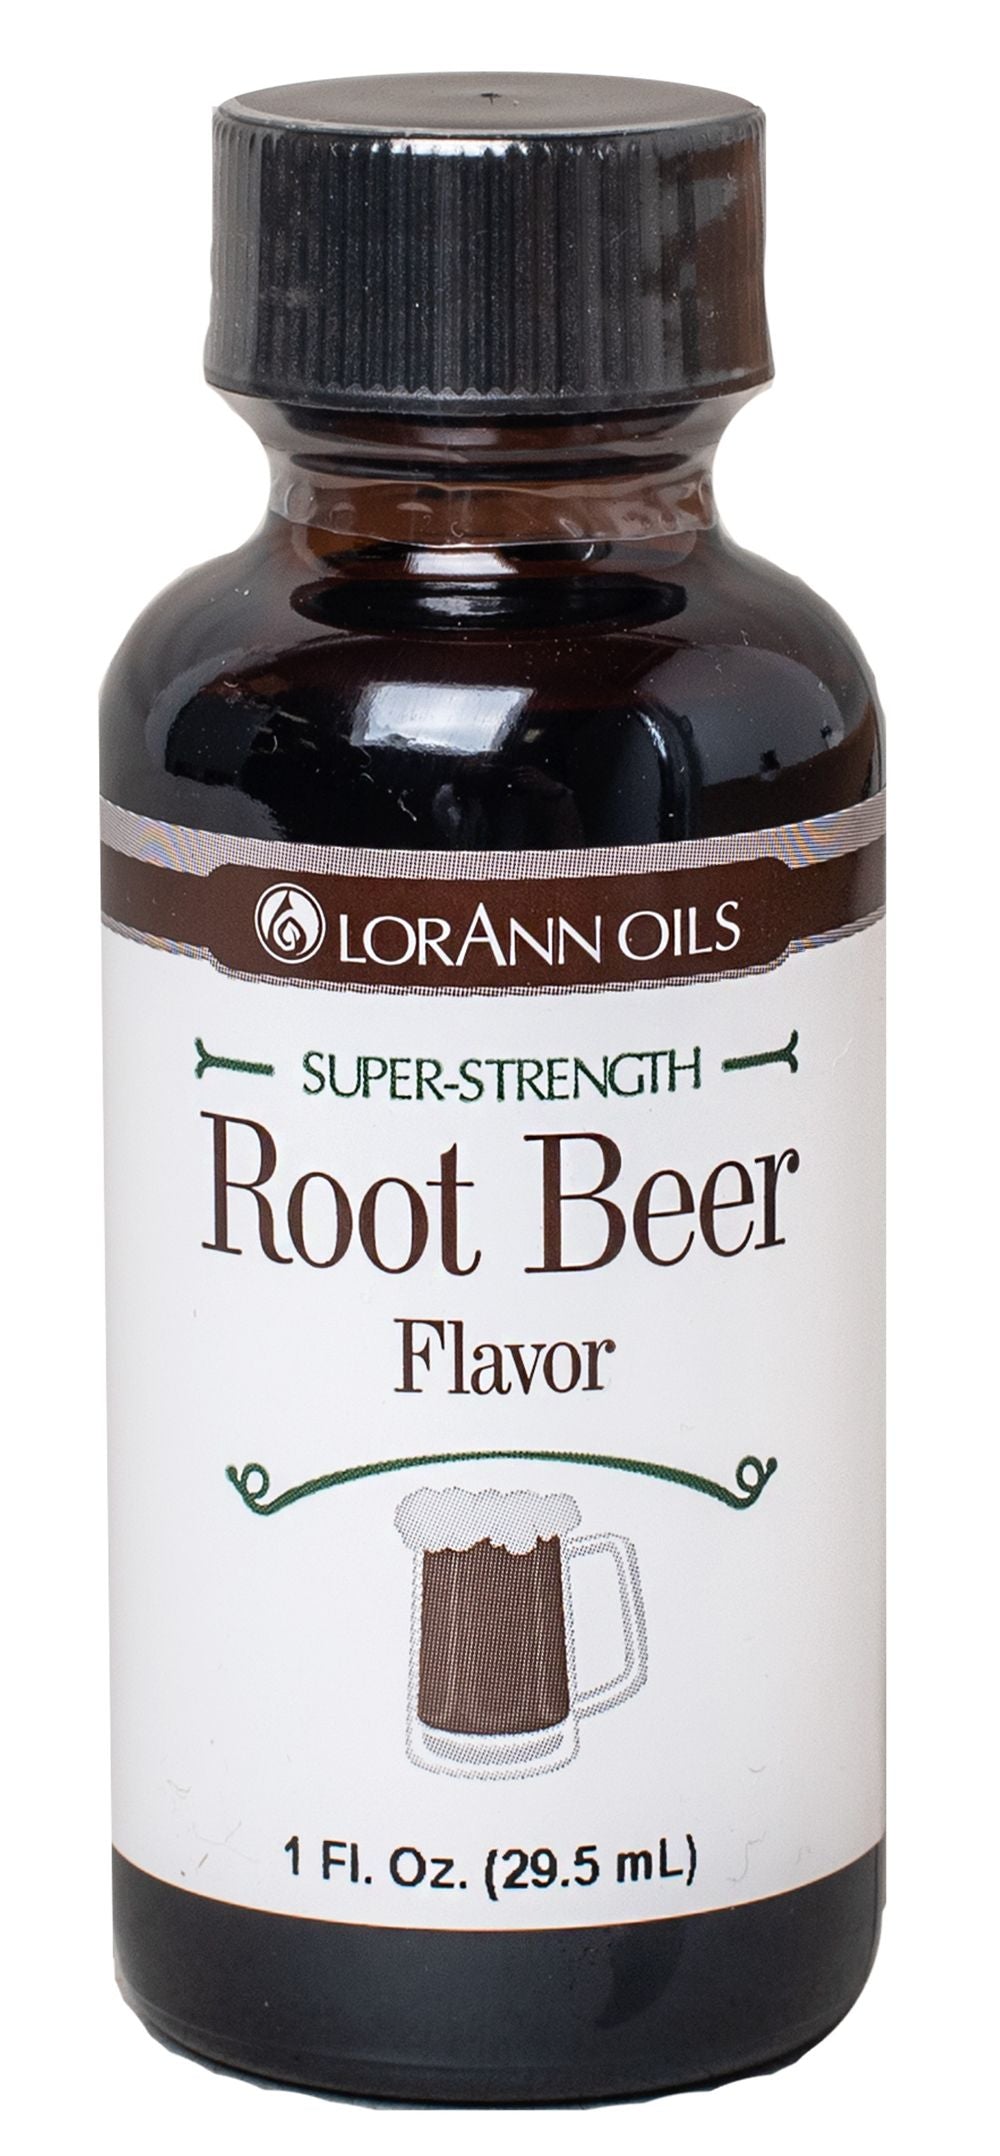 #Flavor_Root Beer #Size_1 fl oz.